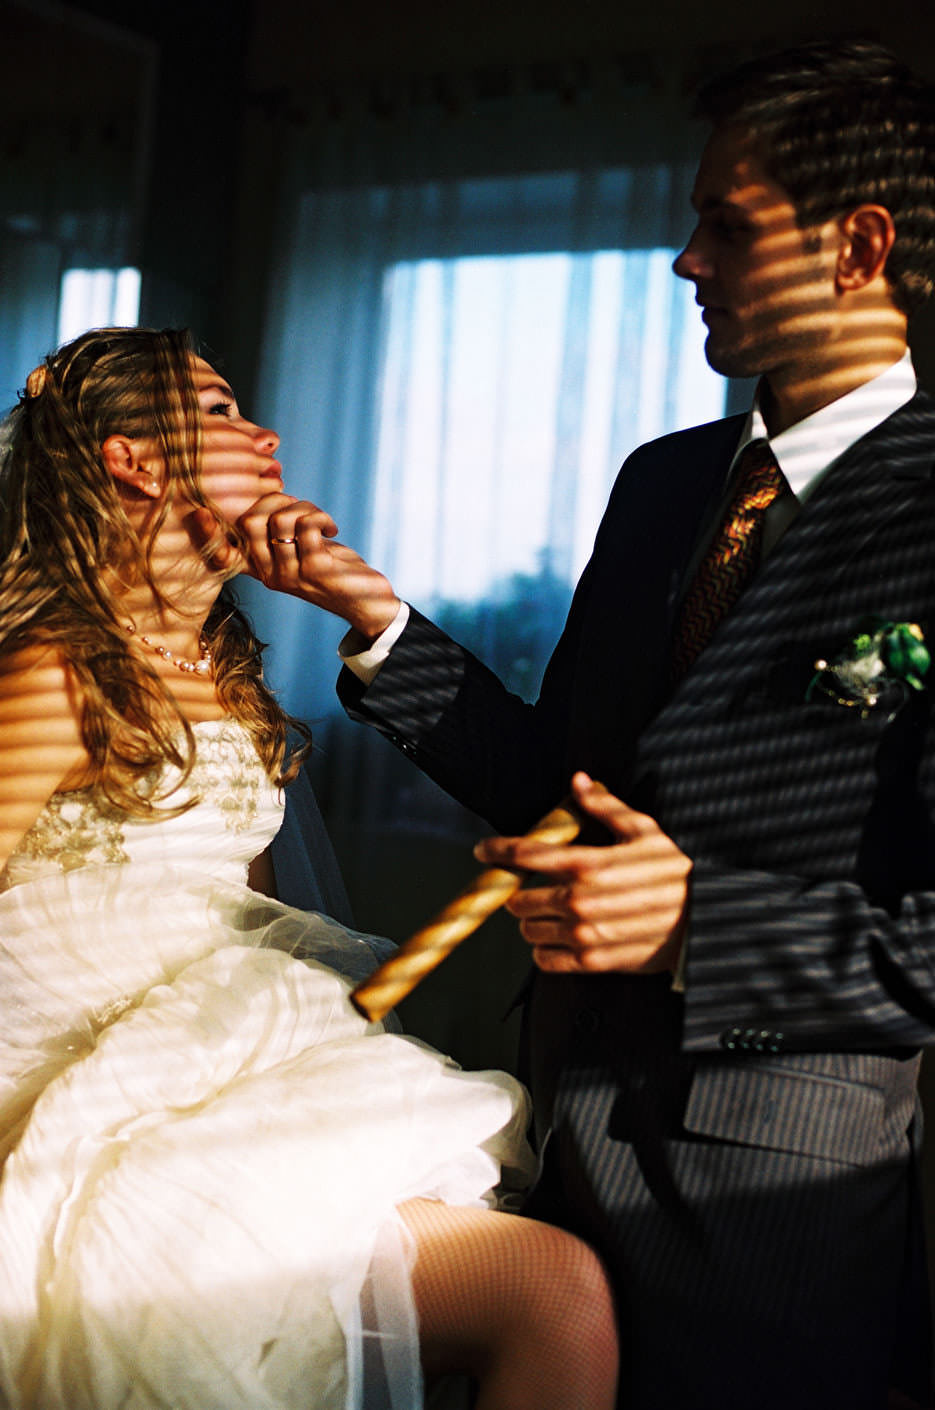 Художественный свадебный портрет жениха и невесты со световами эффектами